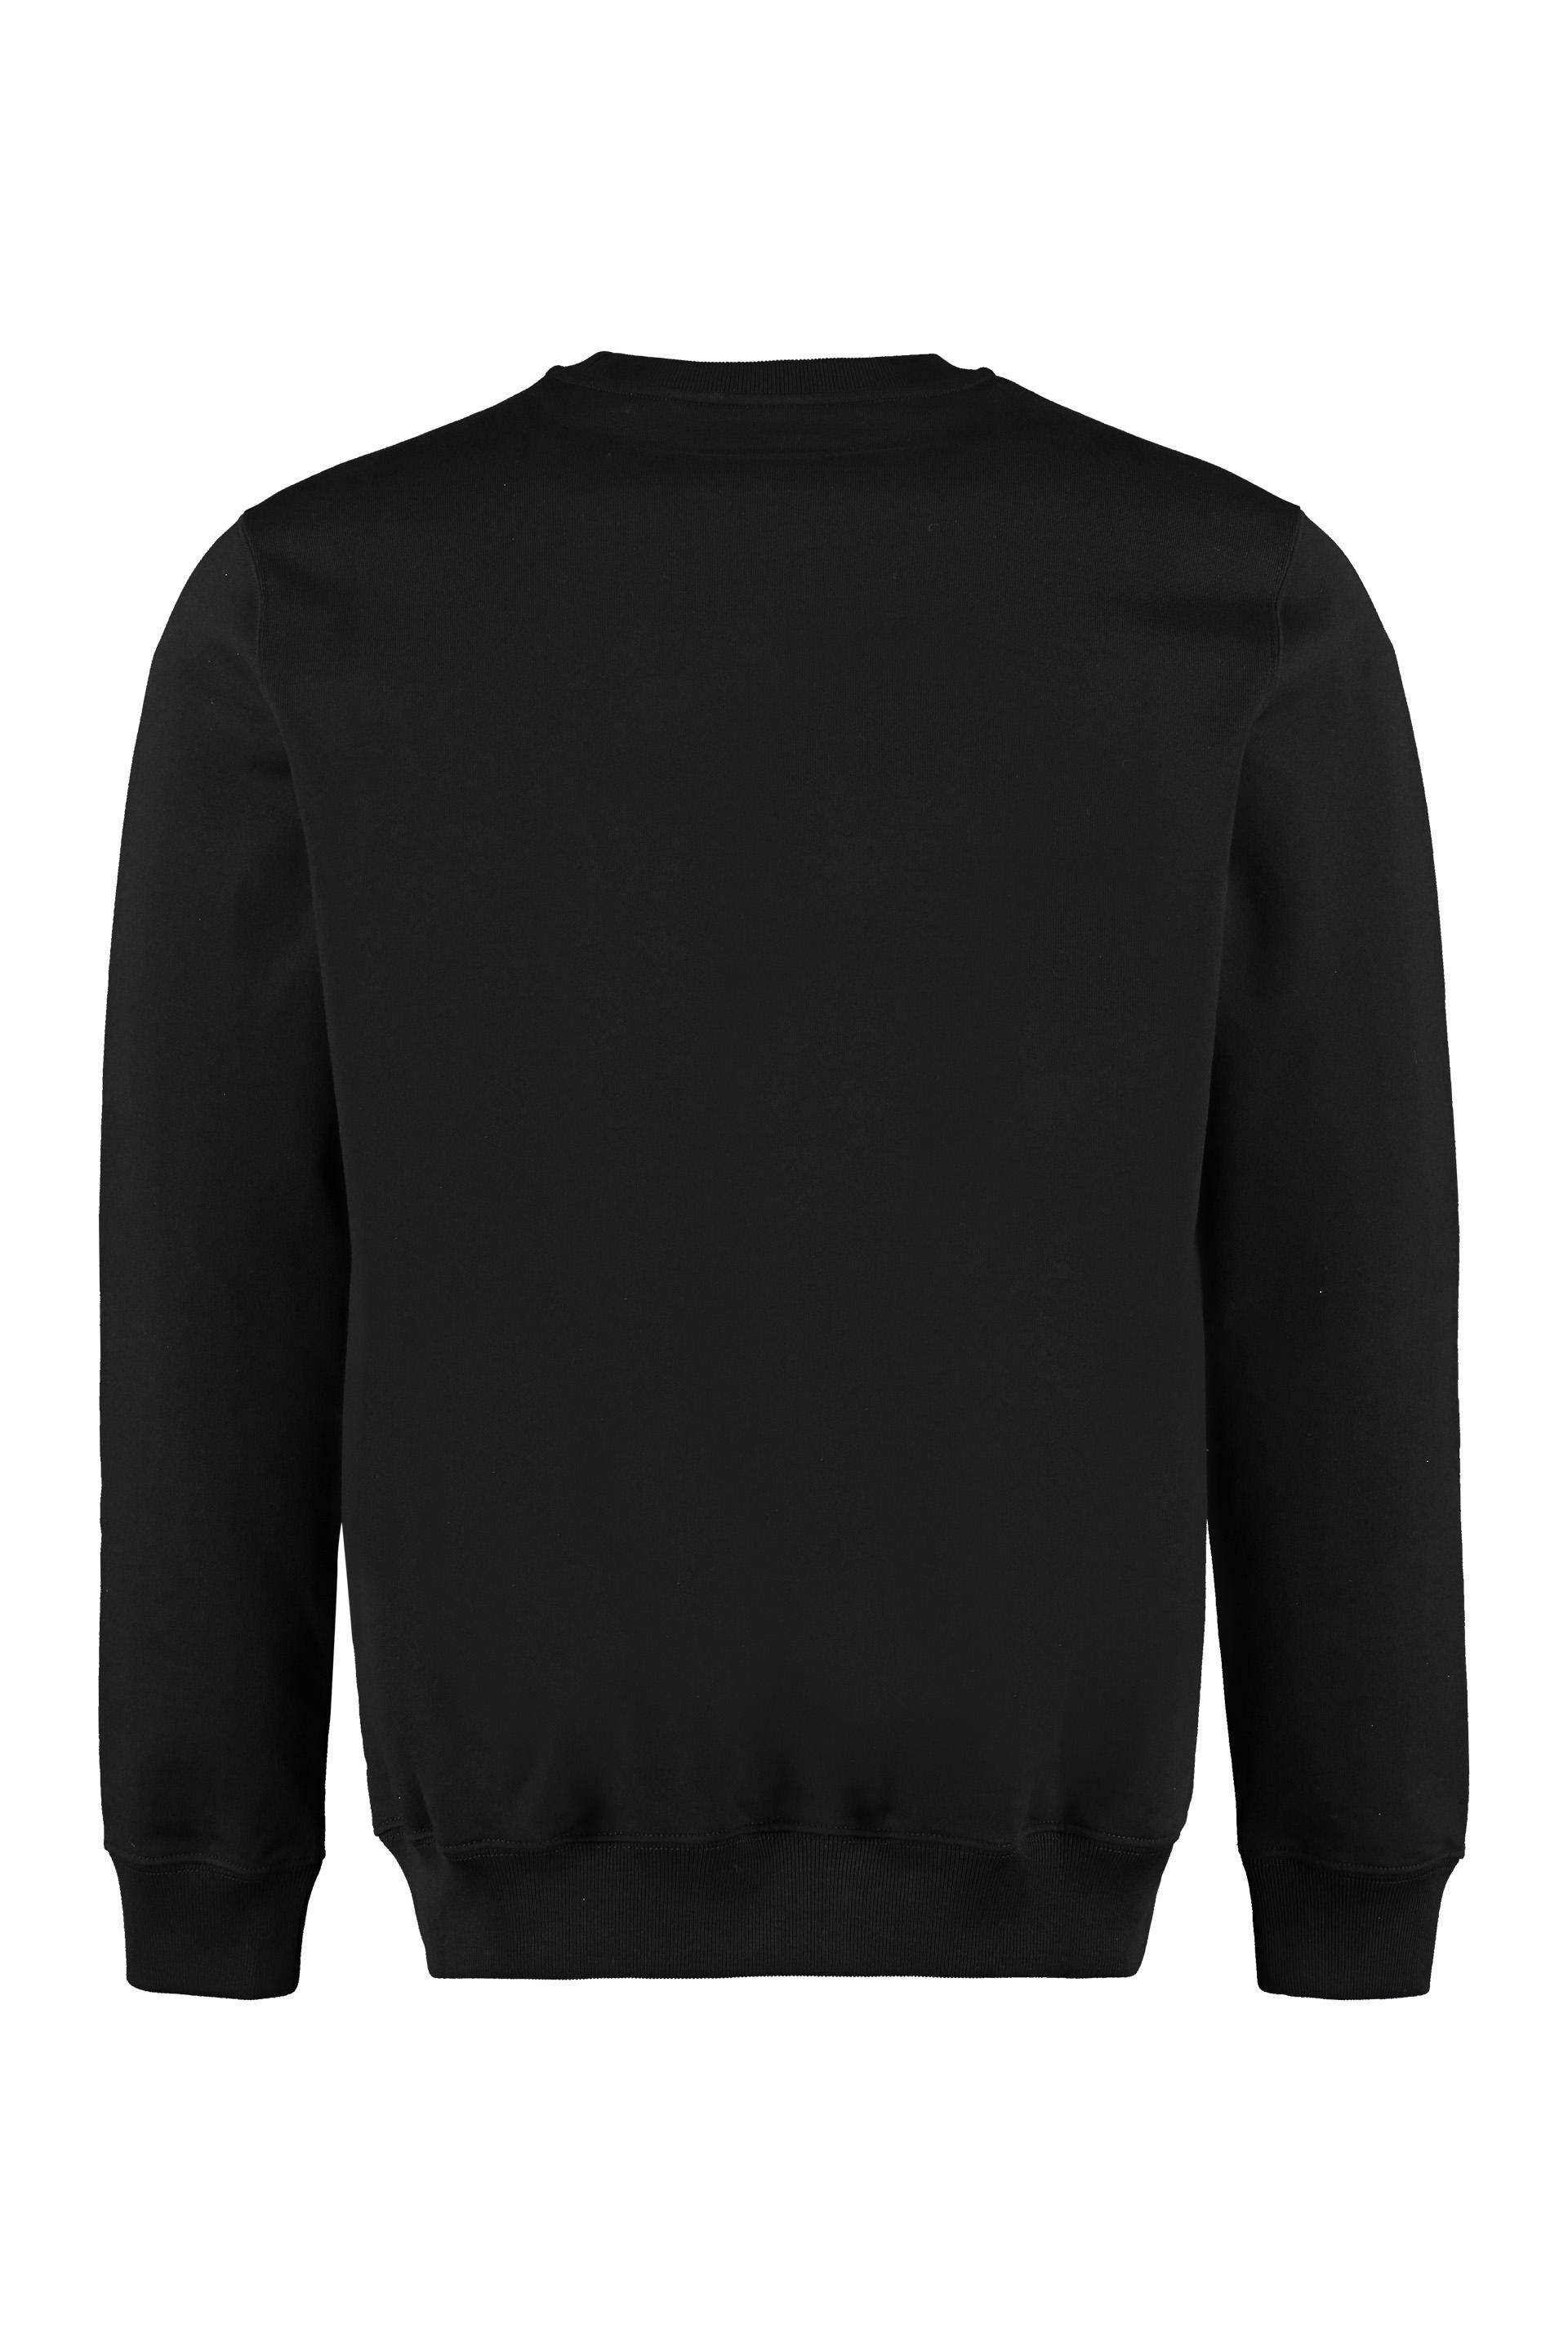 Versace Cotton Crew-neck Sweatshirt in Black for Men - Lyst